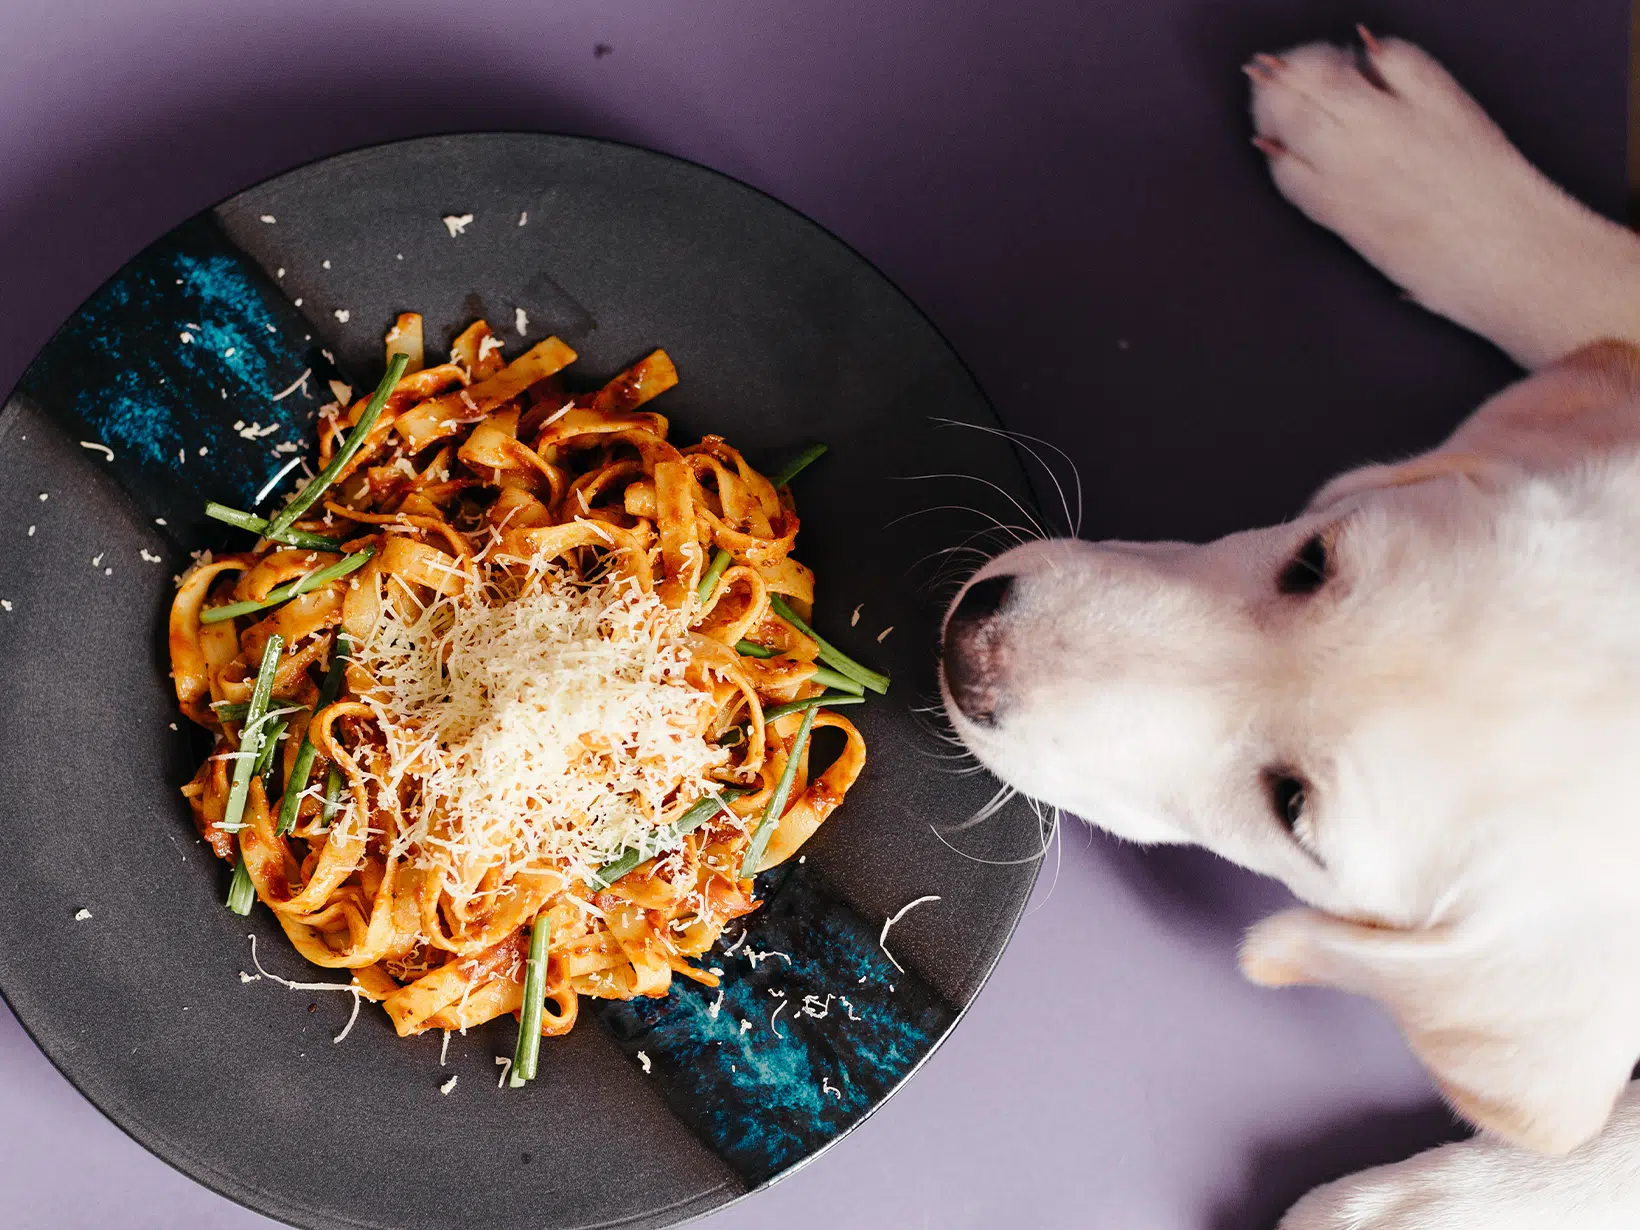 Mag een hond pasta?